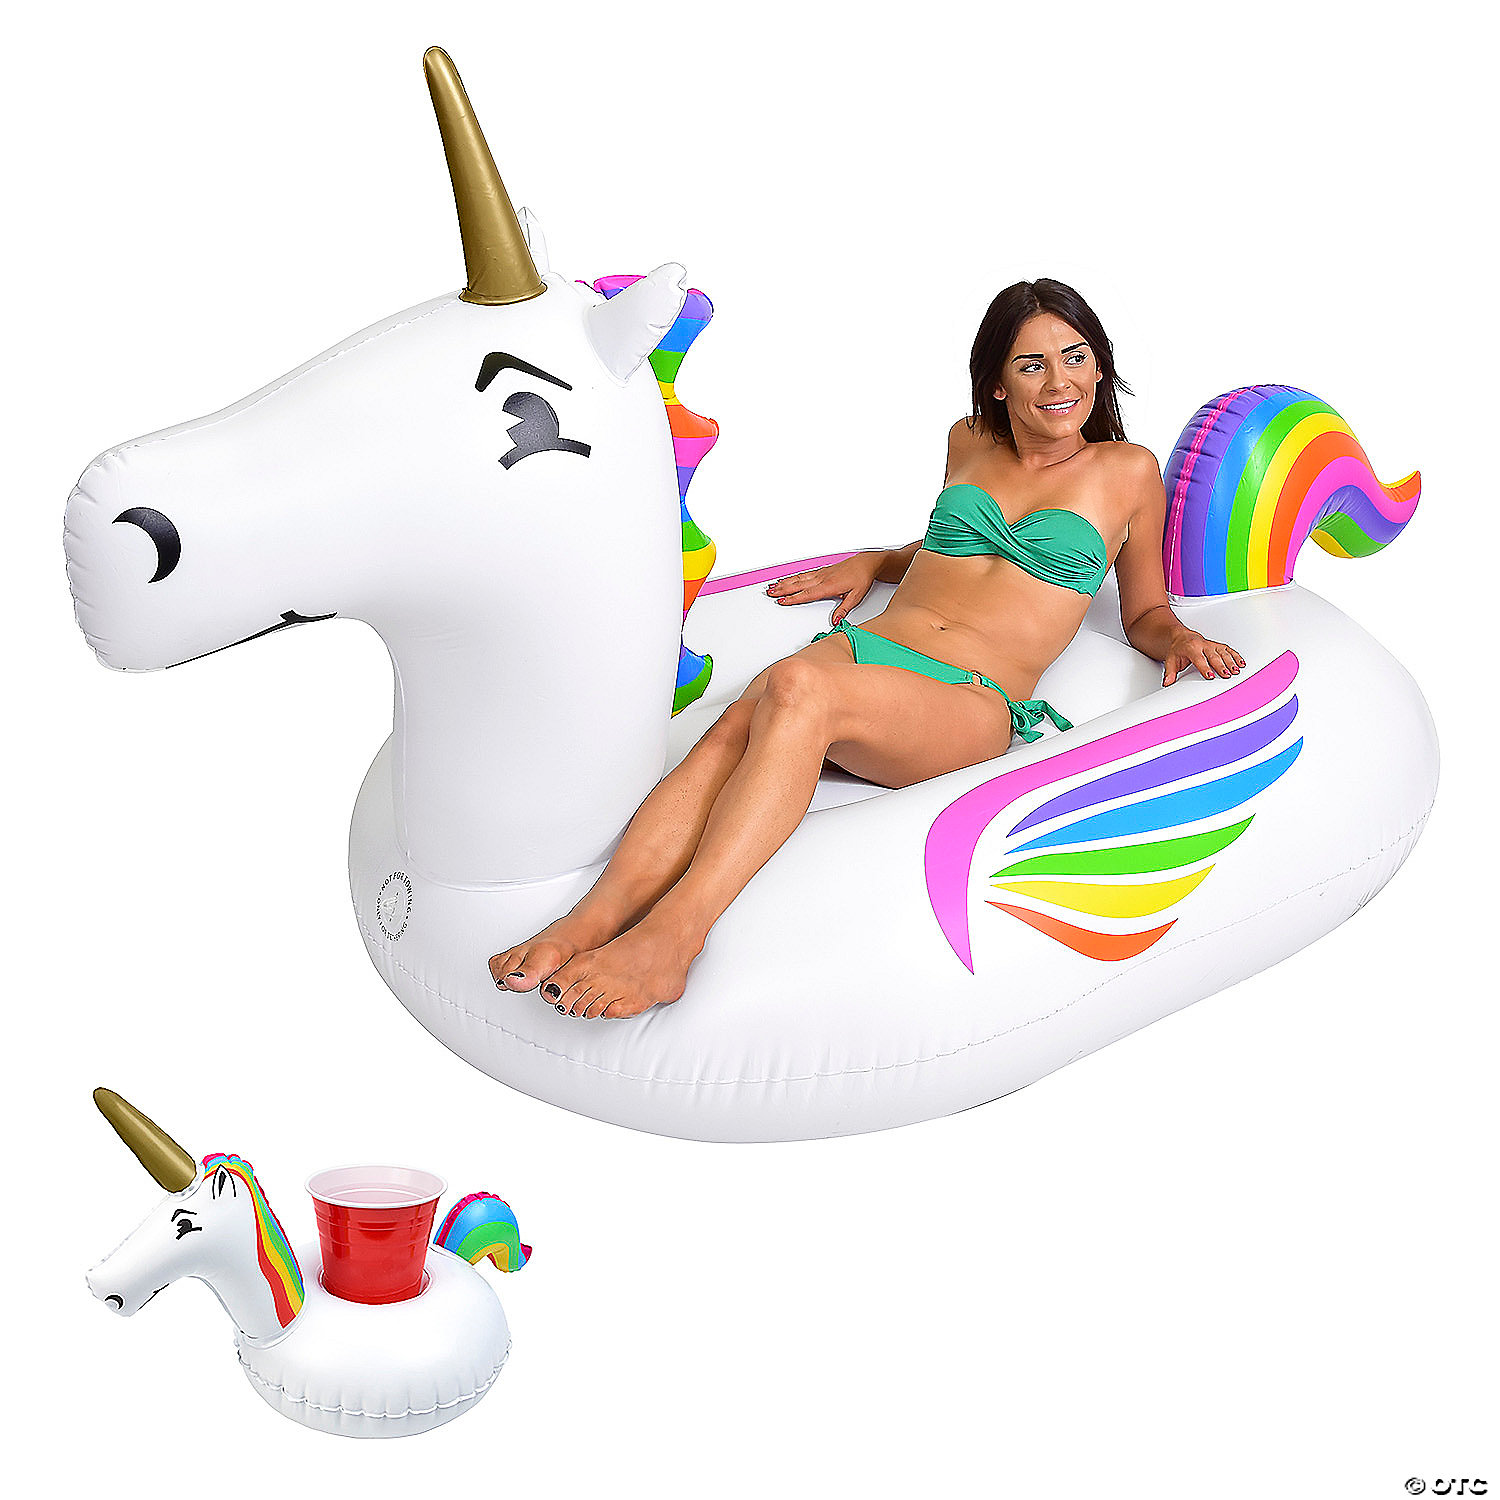 FREE GIFT-Inflatable Unicorn Pool Float-Giant Ride-on Rainbow Unicorn Floaties 